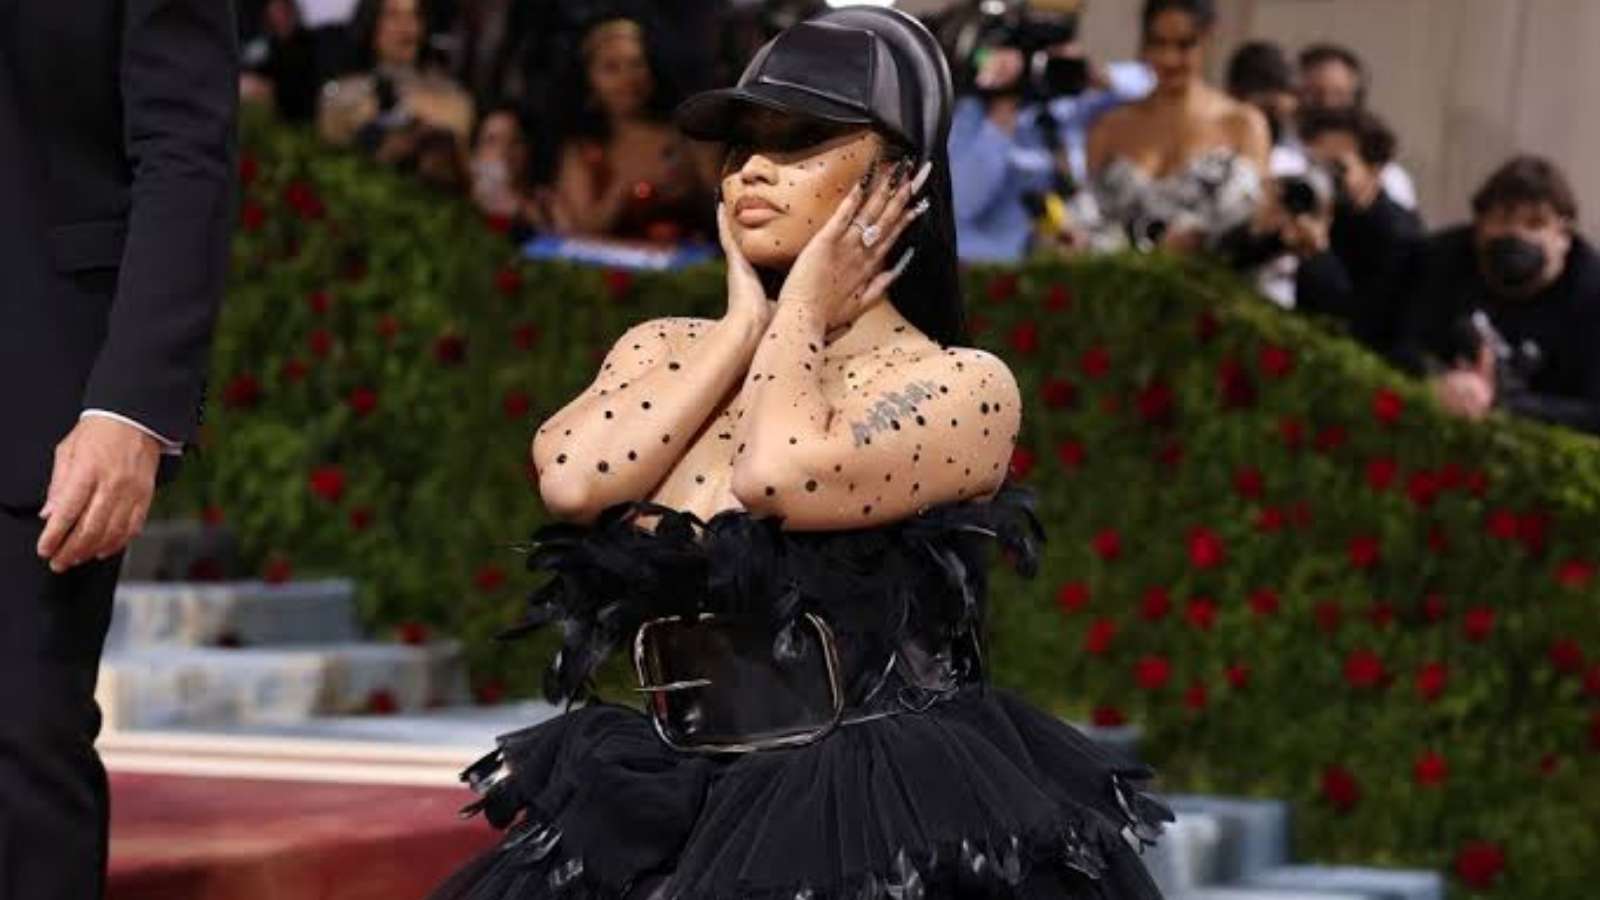 Nicki Minaj at the Met Gala 2022